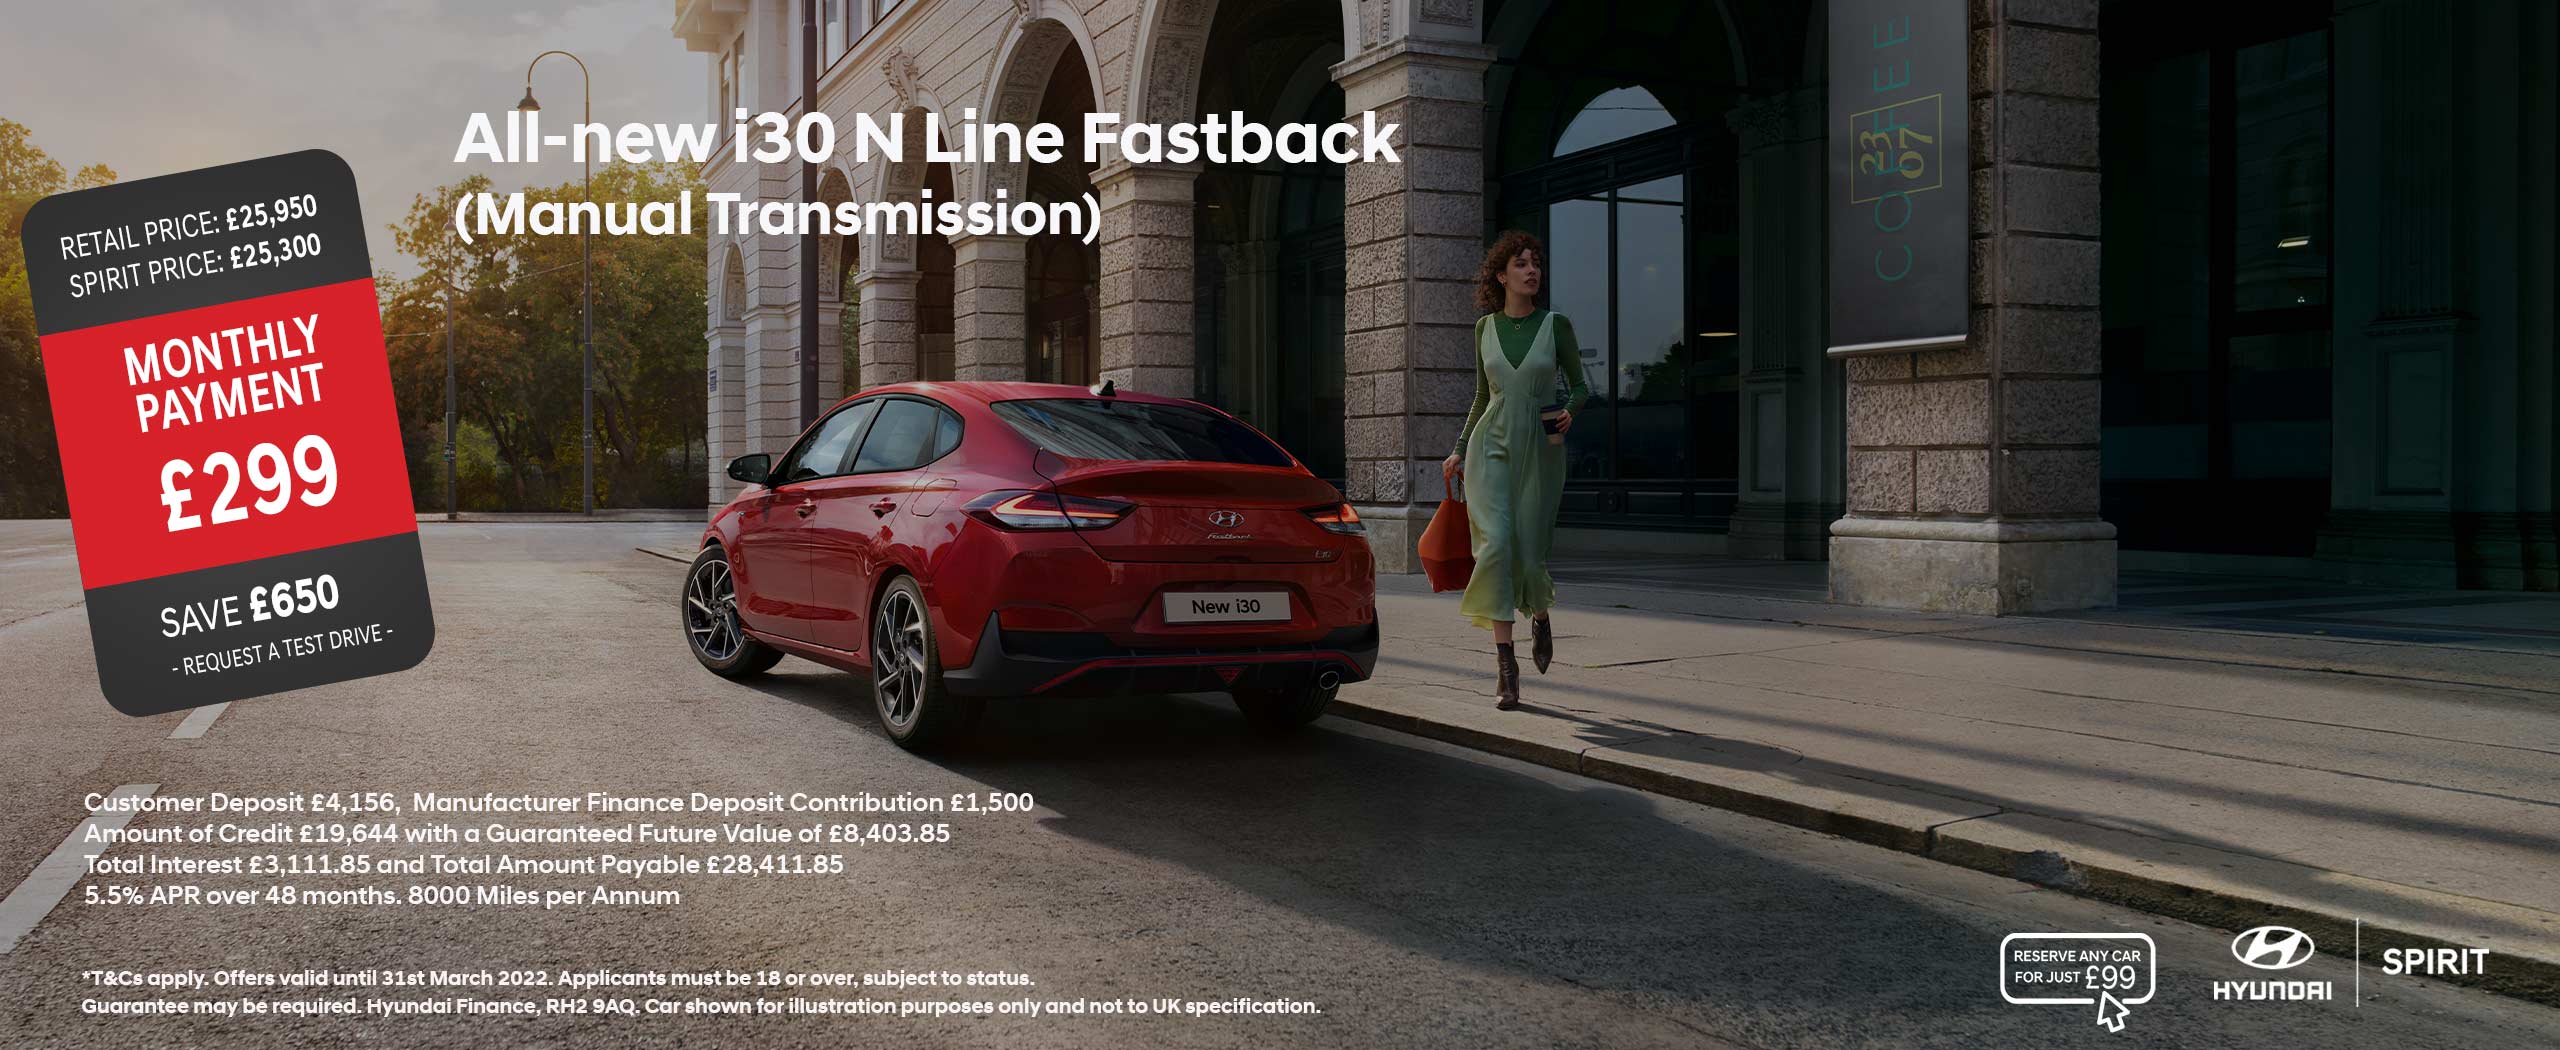 All-new i30 N Line Fastback